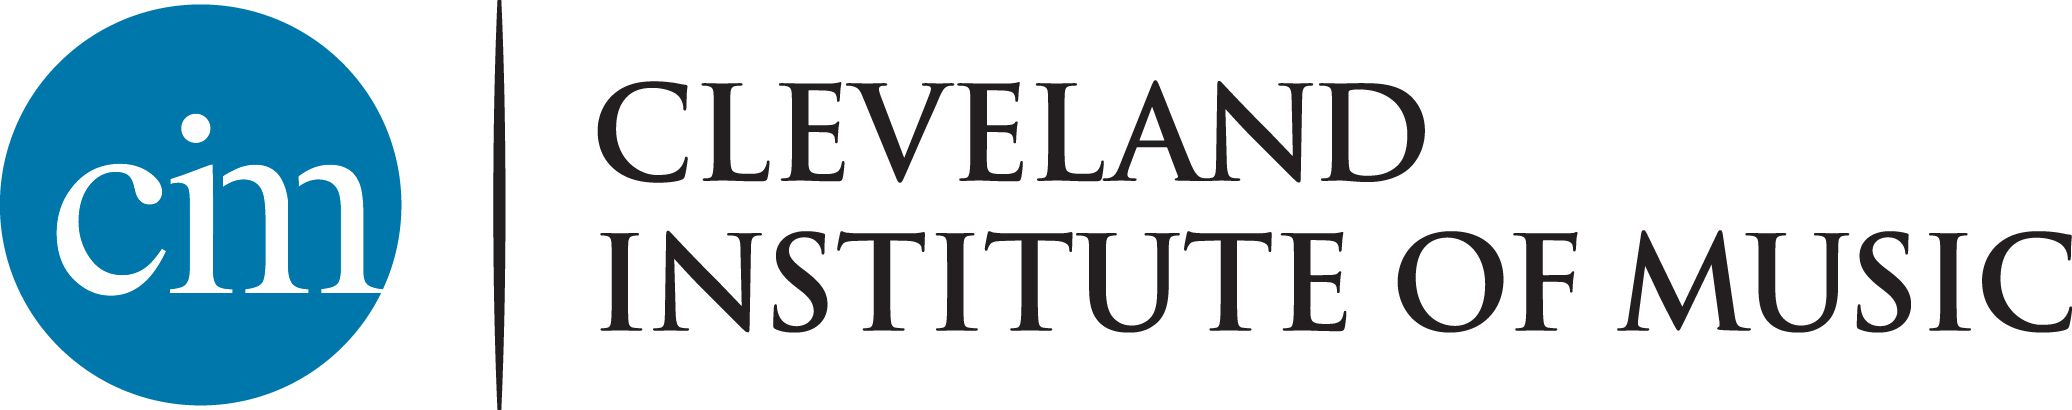 Cleveland Institute of Music (CIM) Logo